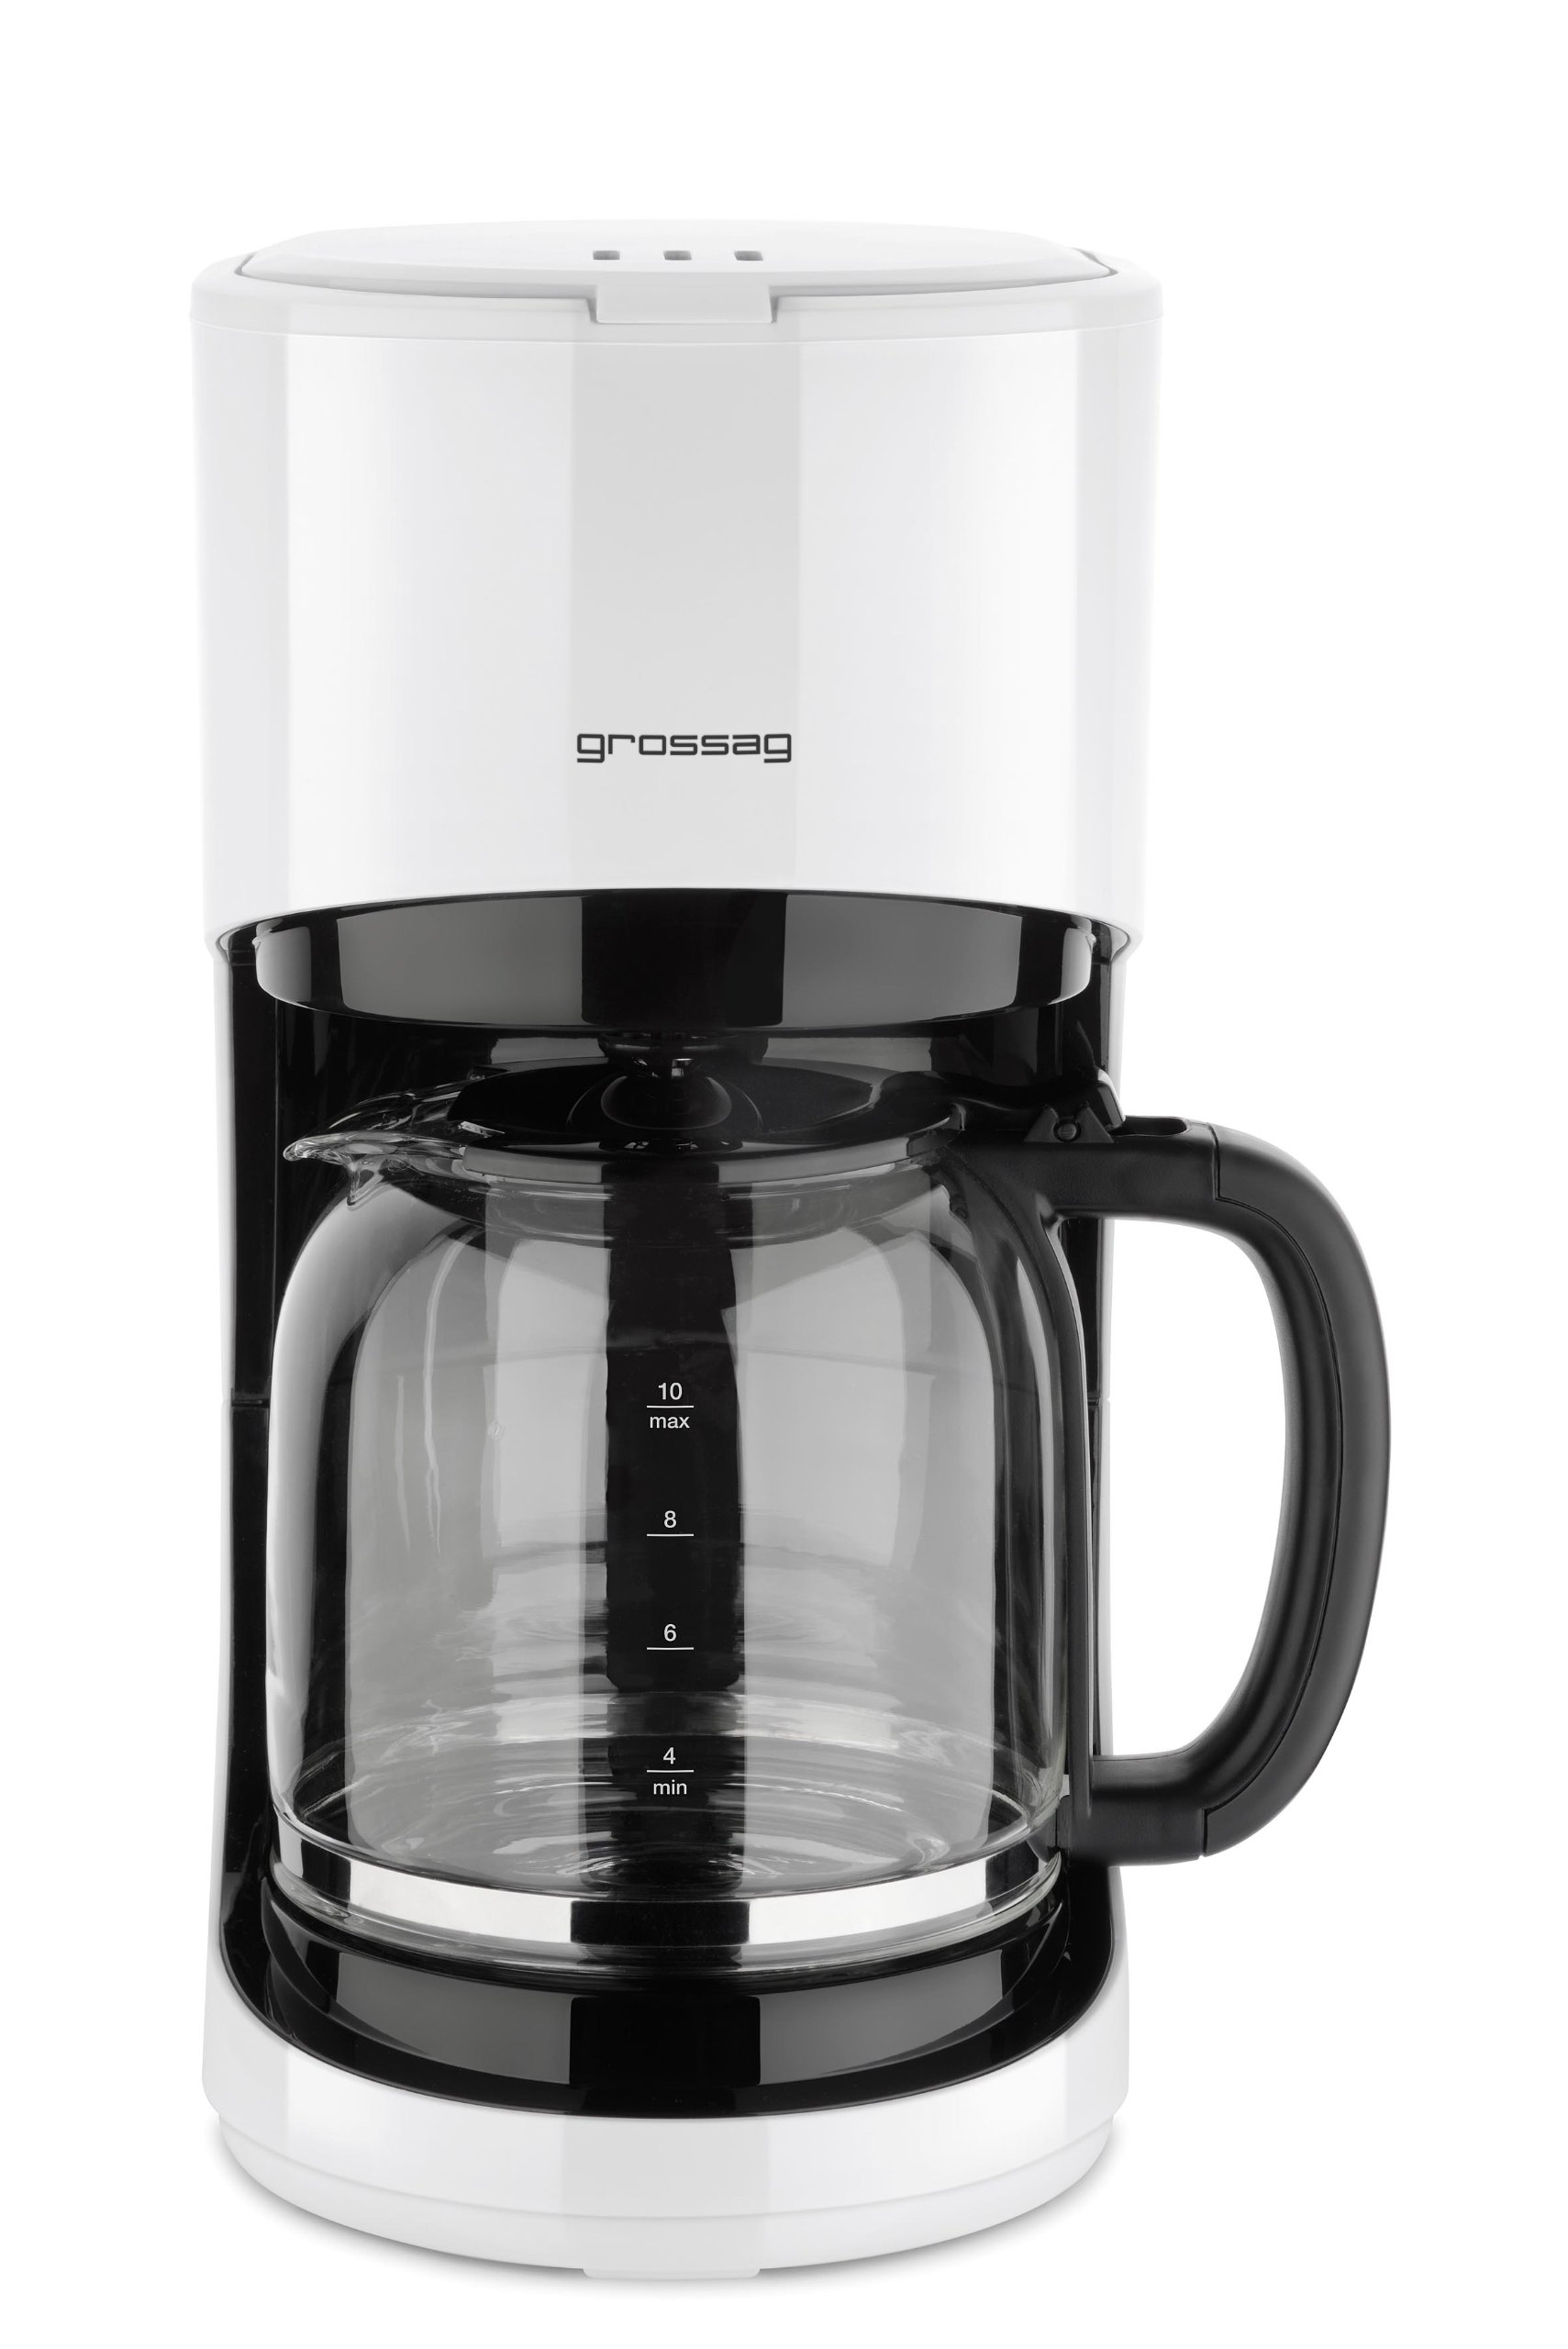 grossag Filter-Kaffeemaschine mit Glaskanne KA 70.10 | 1,4 Liter für 10 Tassen Kaffee | 900 Watt und 240 Volt | Schwarz – Weiß